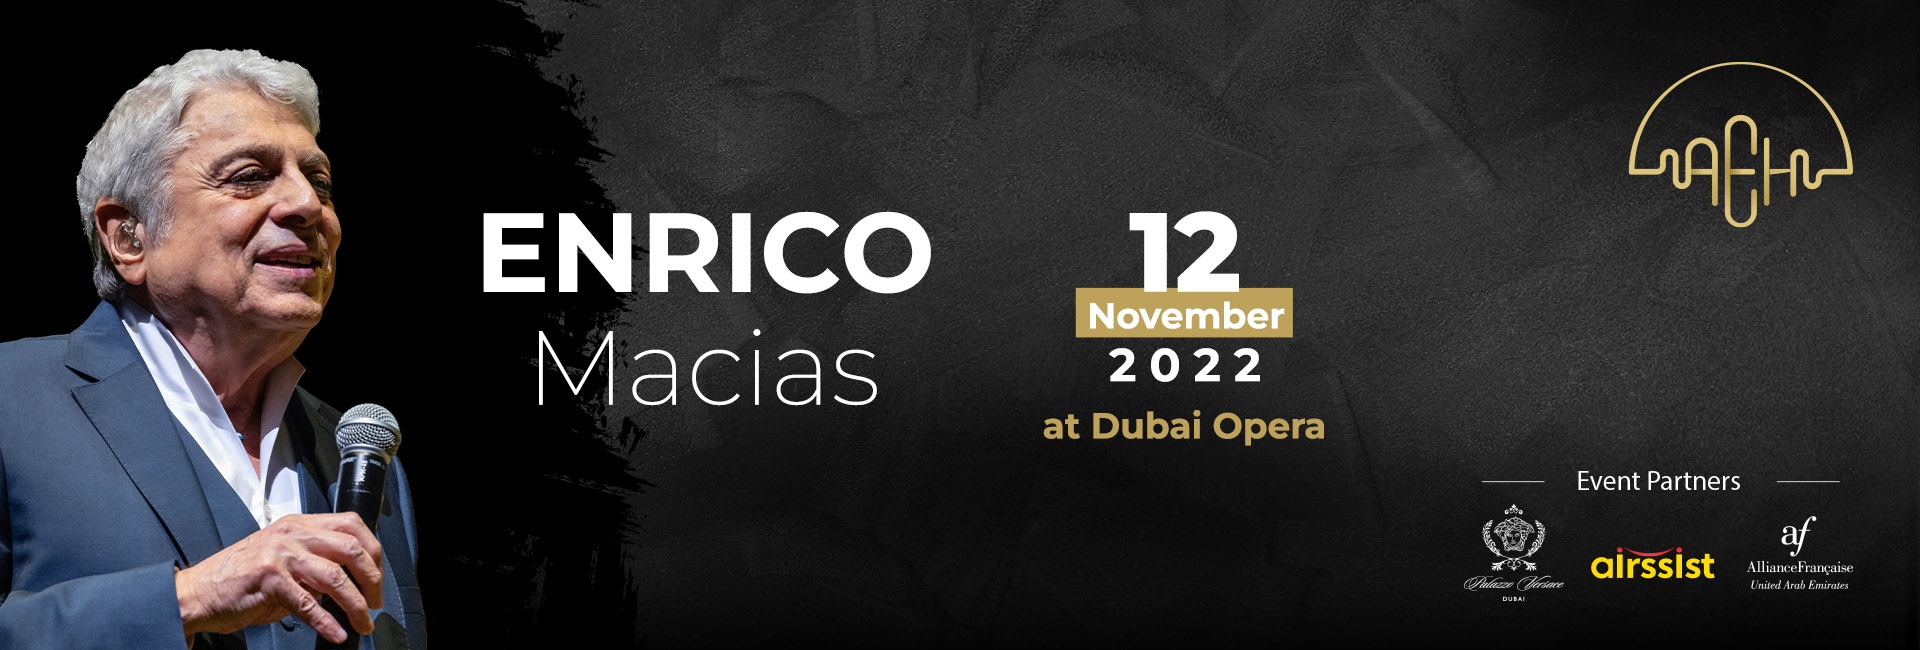 Enrico Macias Live In Dubai Opera